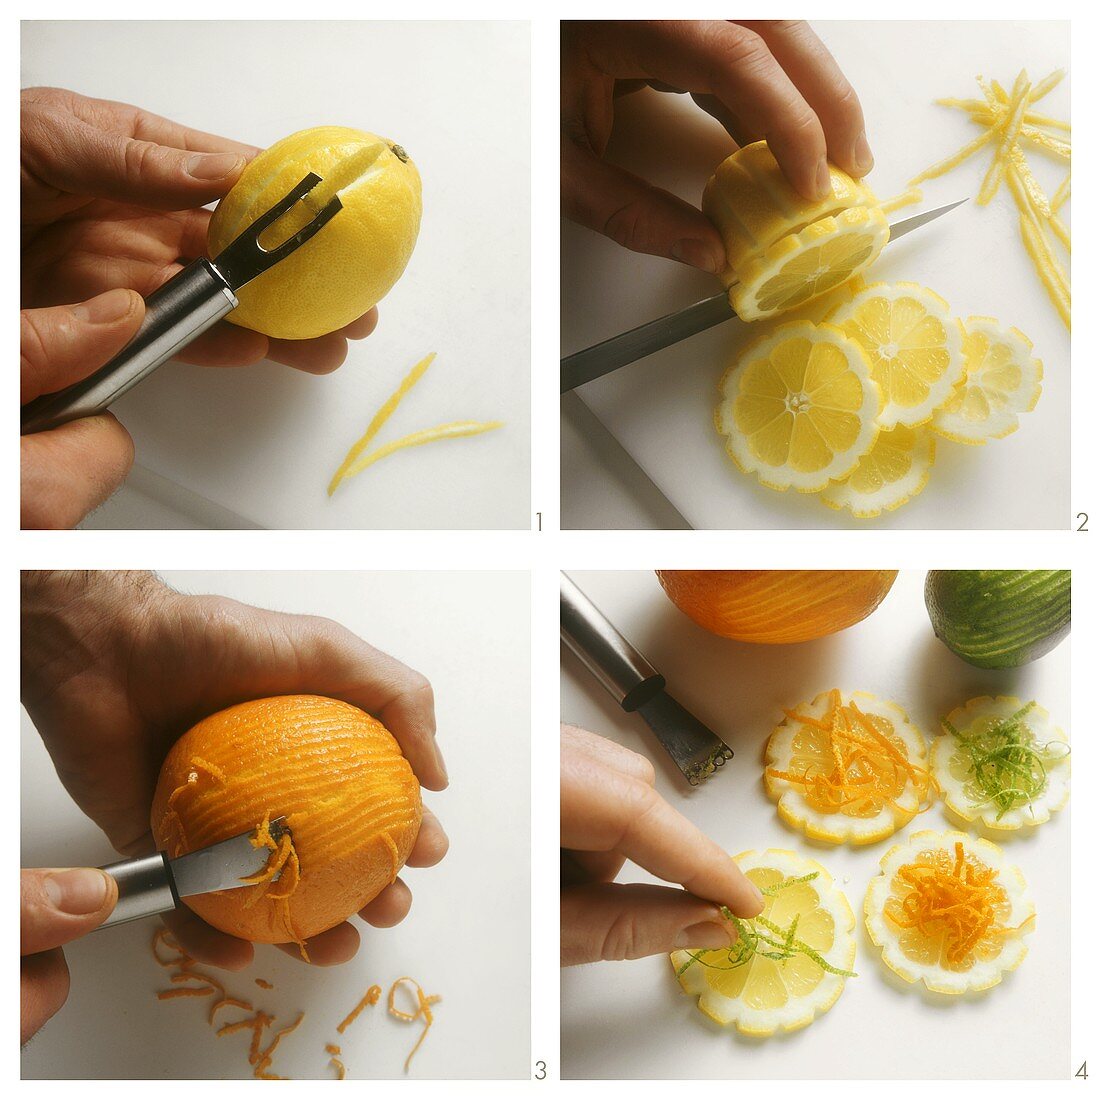 Lemon slices with orange julienne